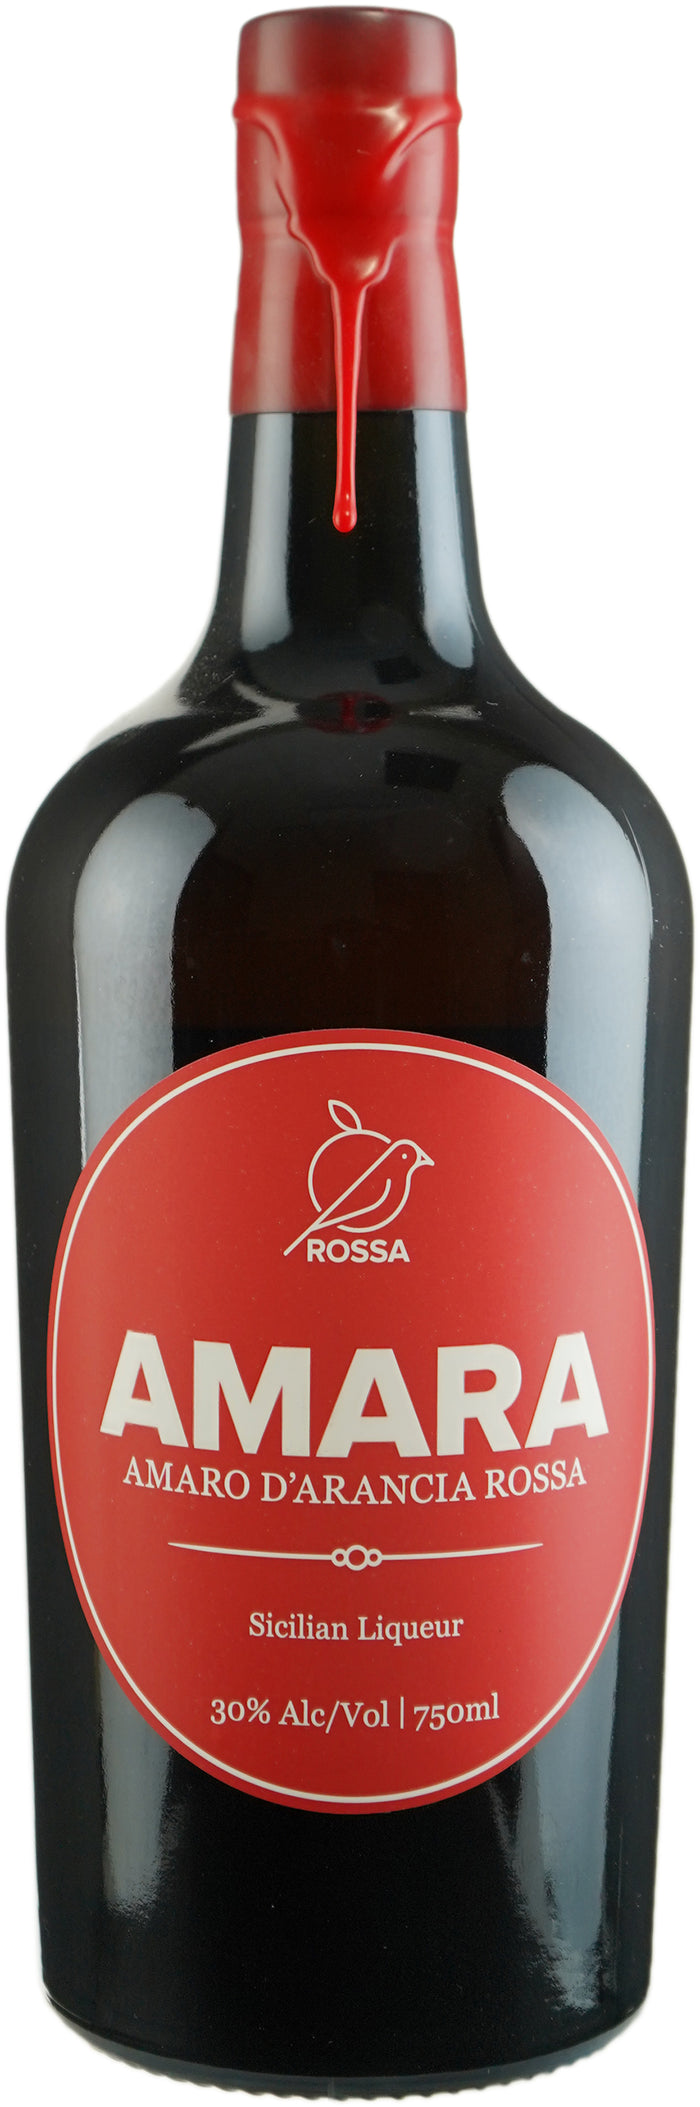 Rossa Sicily Amara Amaro d'Arancia Rossa Liqueur